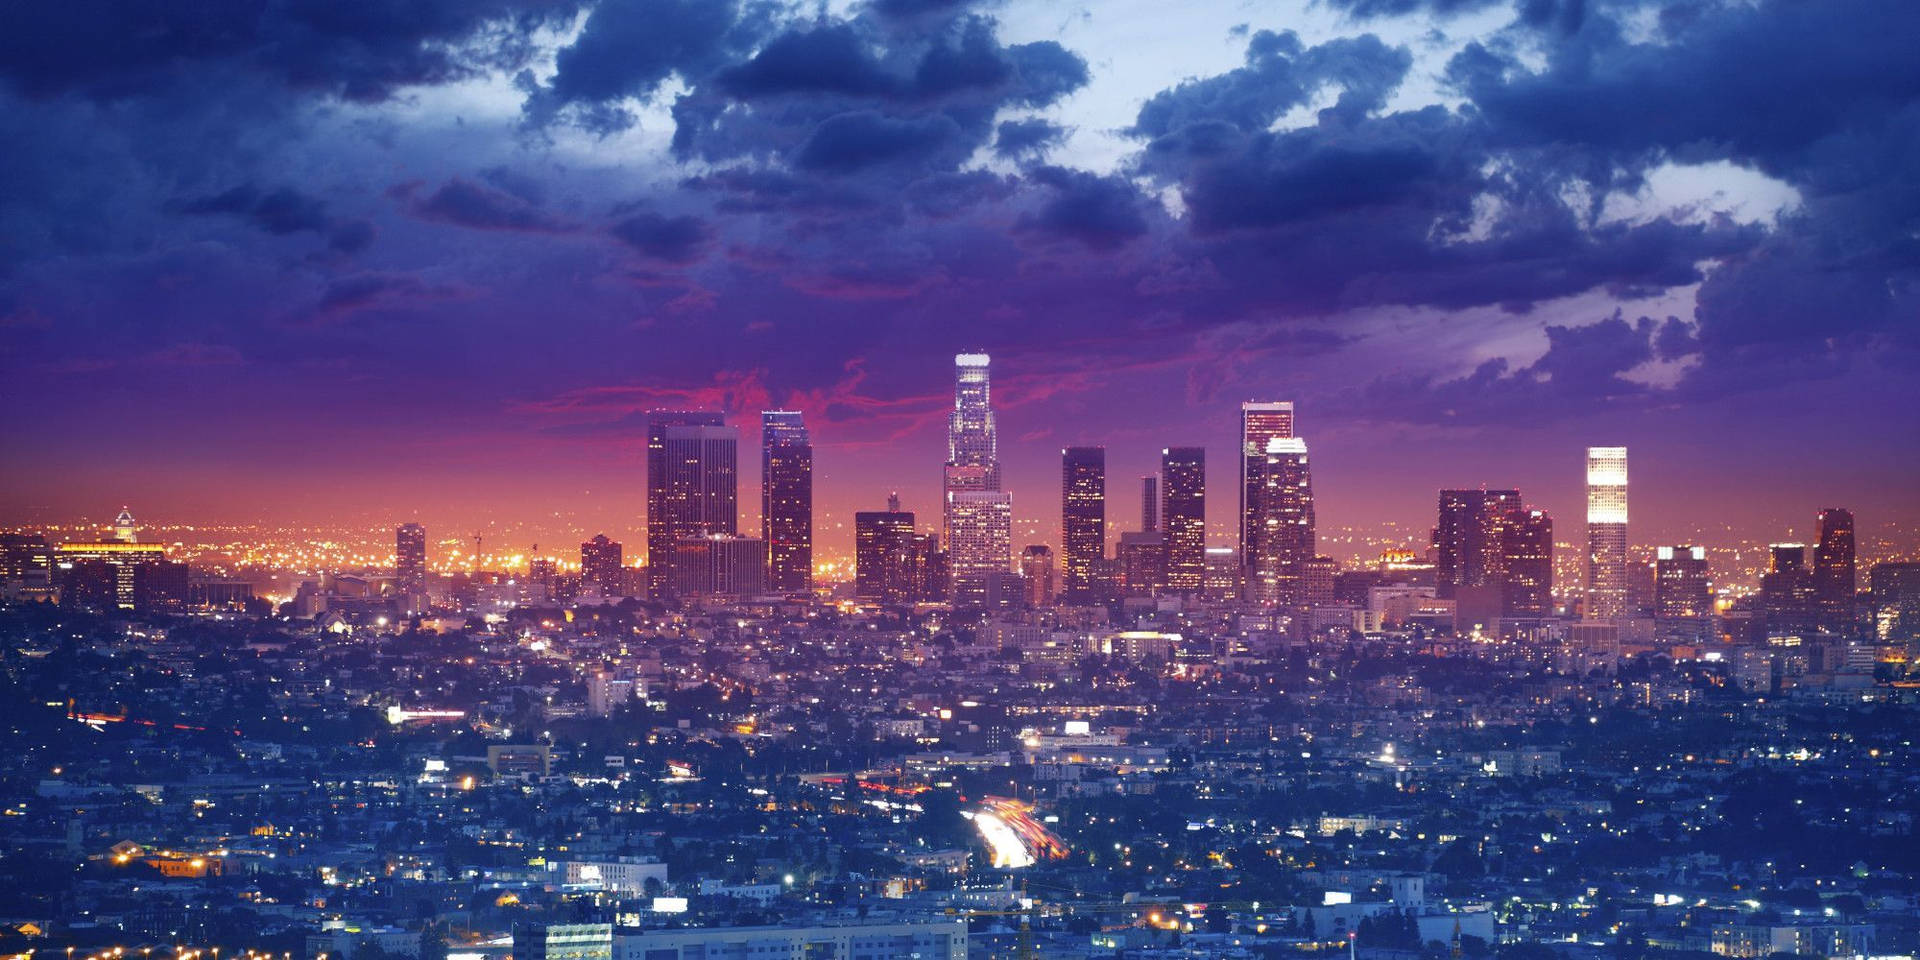 LA sunset skyline wallpaper - 9GAG